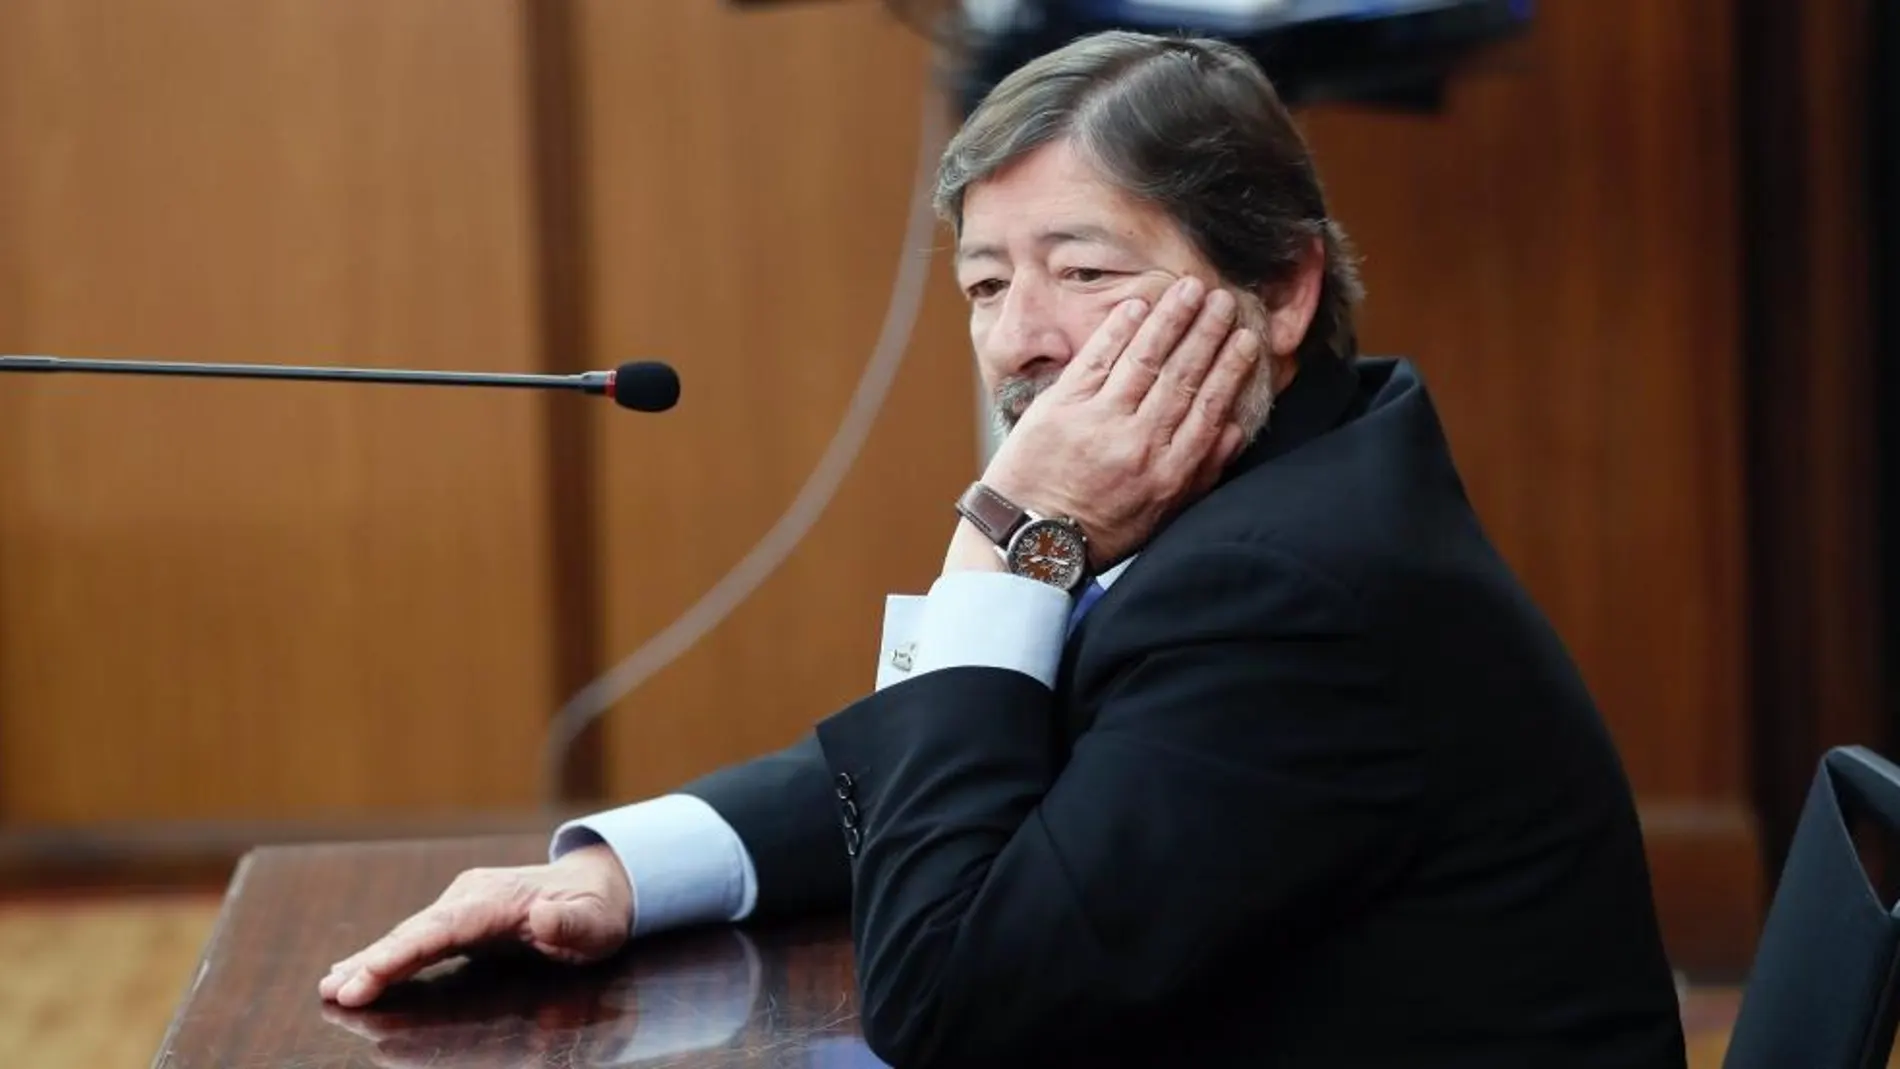 El ex director general de Trabajo Francisco Javier Guerrero abrió el fuego de las declaraciones, a petición de la Fiscalía